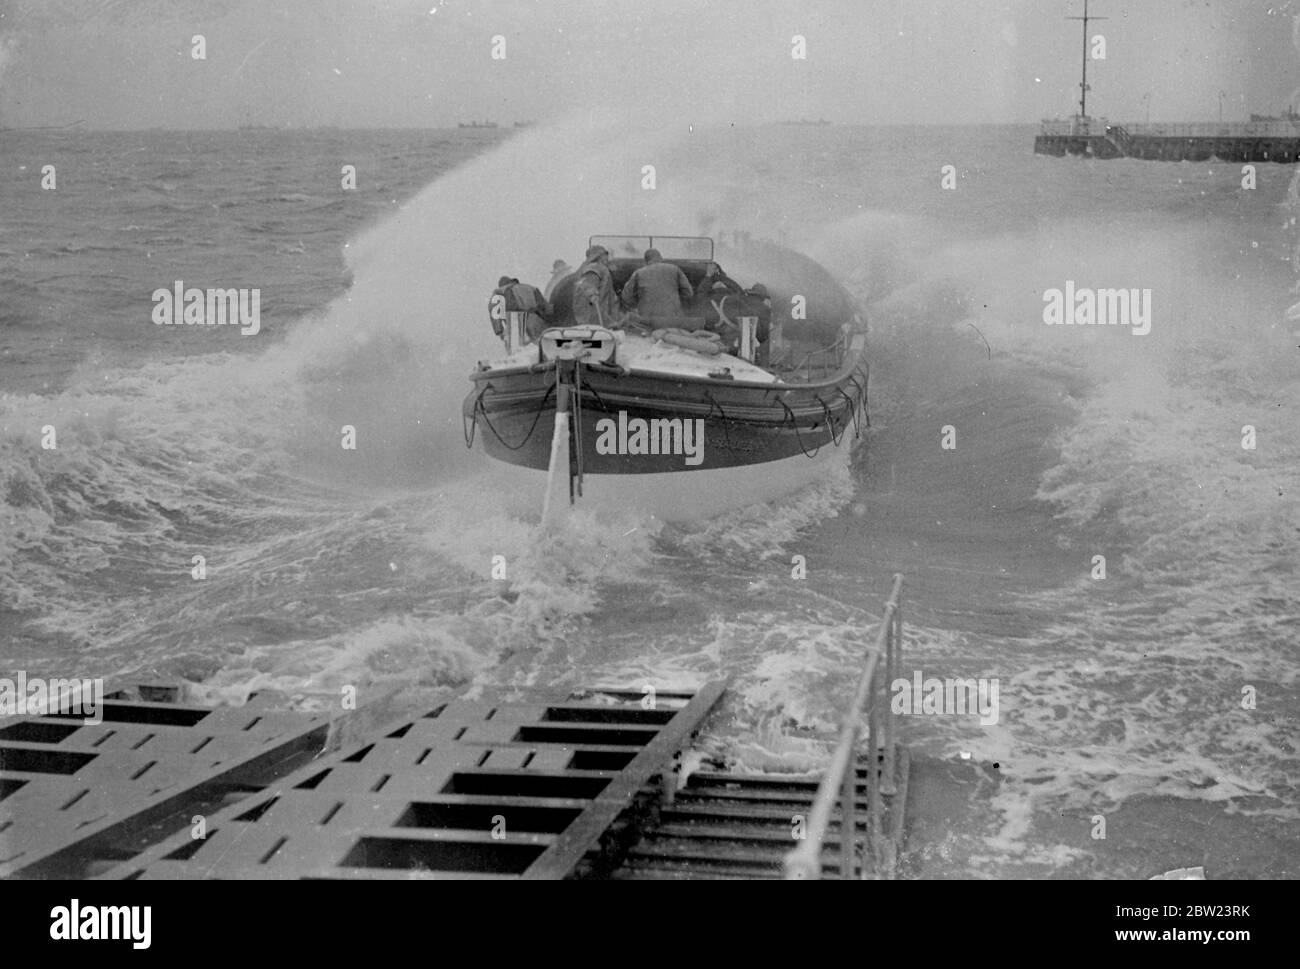 Skipper und Gefährte der Barge, die von Southend Rettungsboot in rauer See gerettet wurde. Southend-on-Sea, (Essex) Rettungsboot ging aus, um Skipper F Whiting zu retten, und ist Maitre J Burgess, beide von Rochester, als die Motorbarge 'Pacific', von Isleworth hilflos in gewaltigen sieht in der Themse Mündung nach ihrem Motor kaputt ging. Ein Schlepper von sheerness konnte den Pazifik nicht erreichen und das Rettungsboot wurde gerufen. Foto zeigt das Rettungsboot Southend, das zur Rettung des Lastkahns gestartet wird 15. Februar 1938 Stockfoto